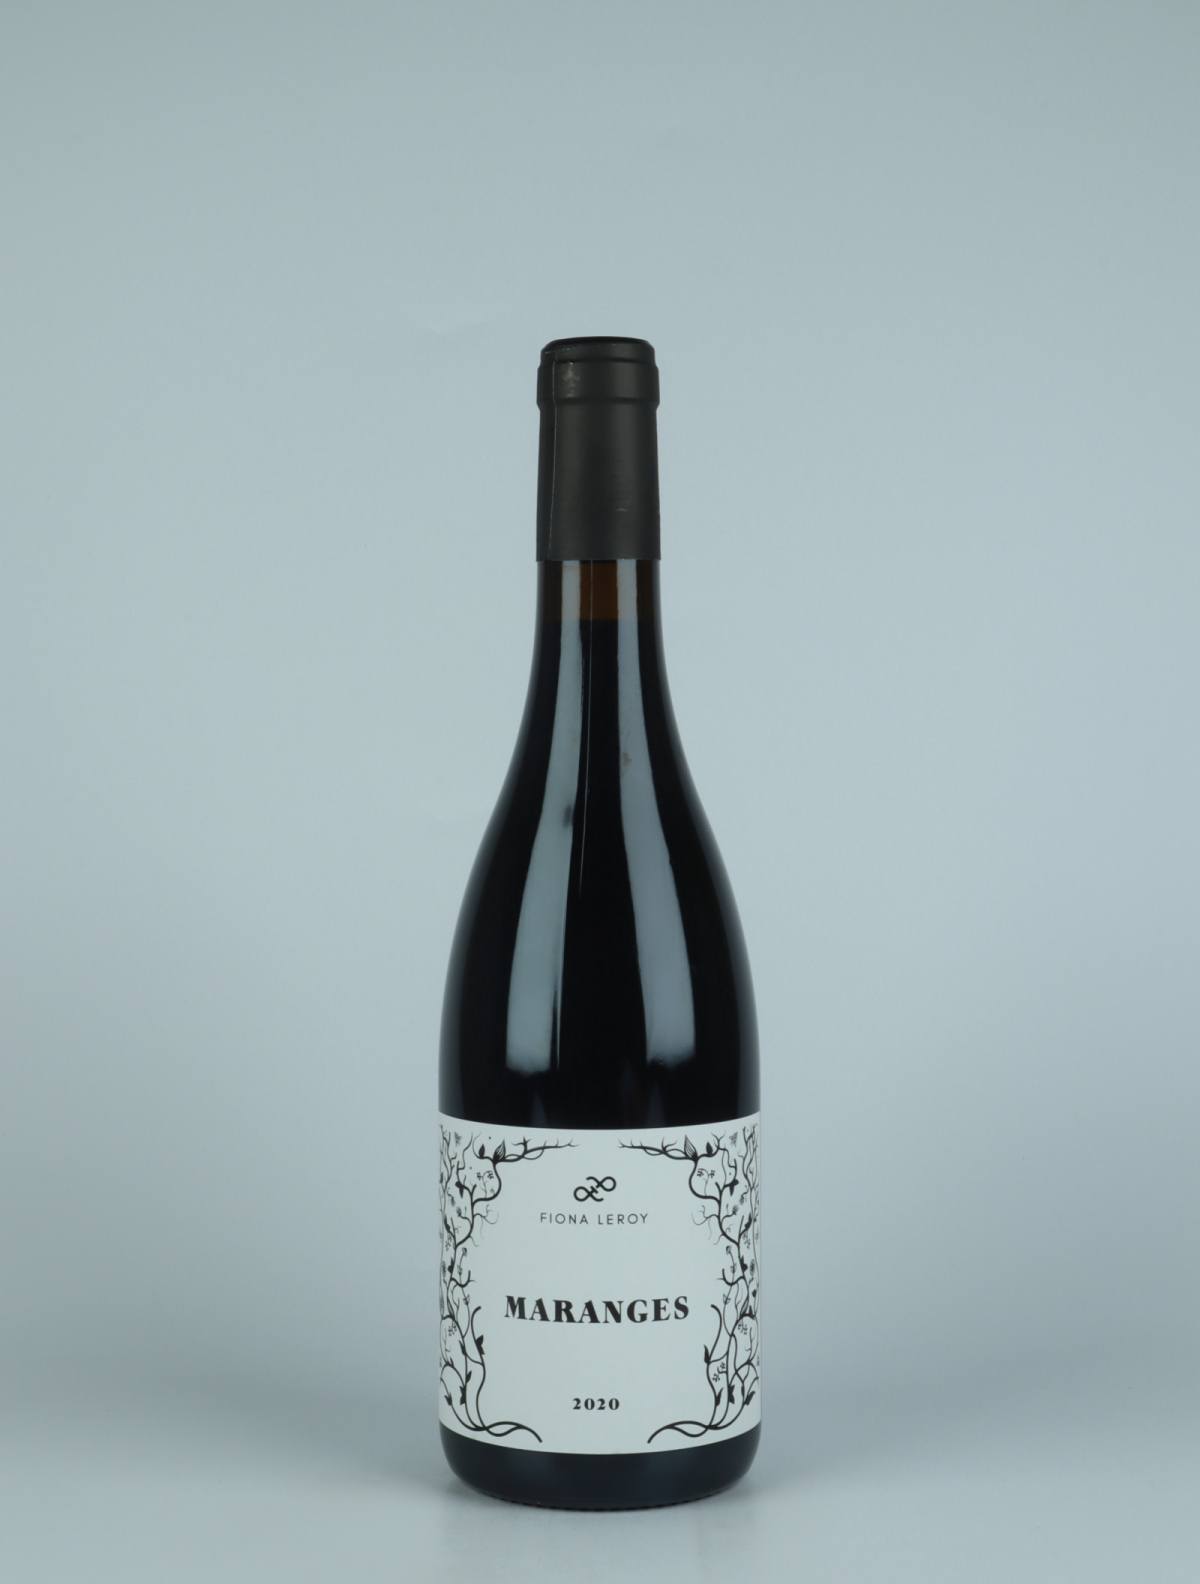 En flaske 2020 Maranges Rouge Rødvin fra Fiona Leroy, Bourgogne i Frankrig